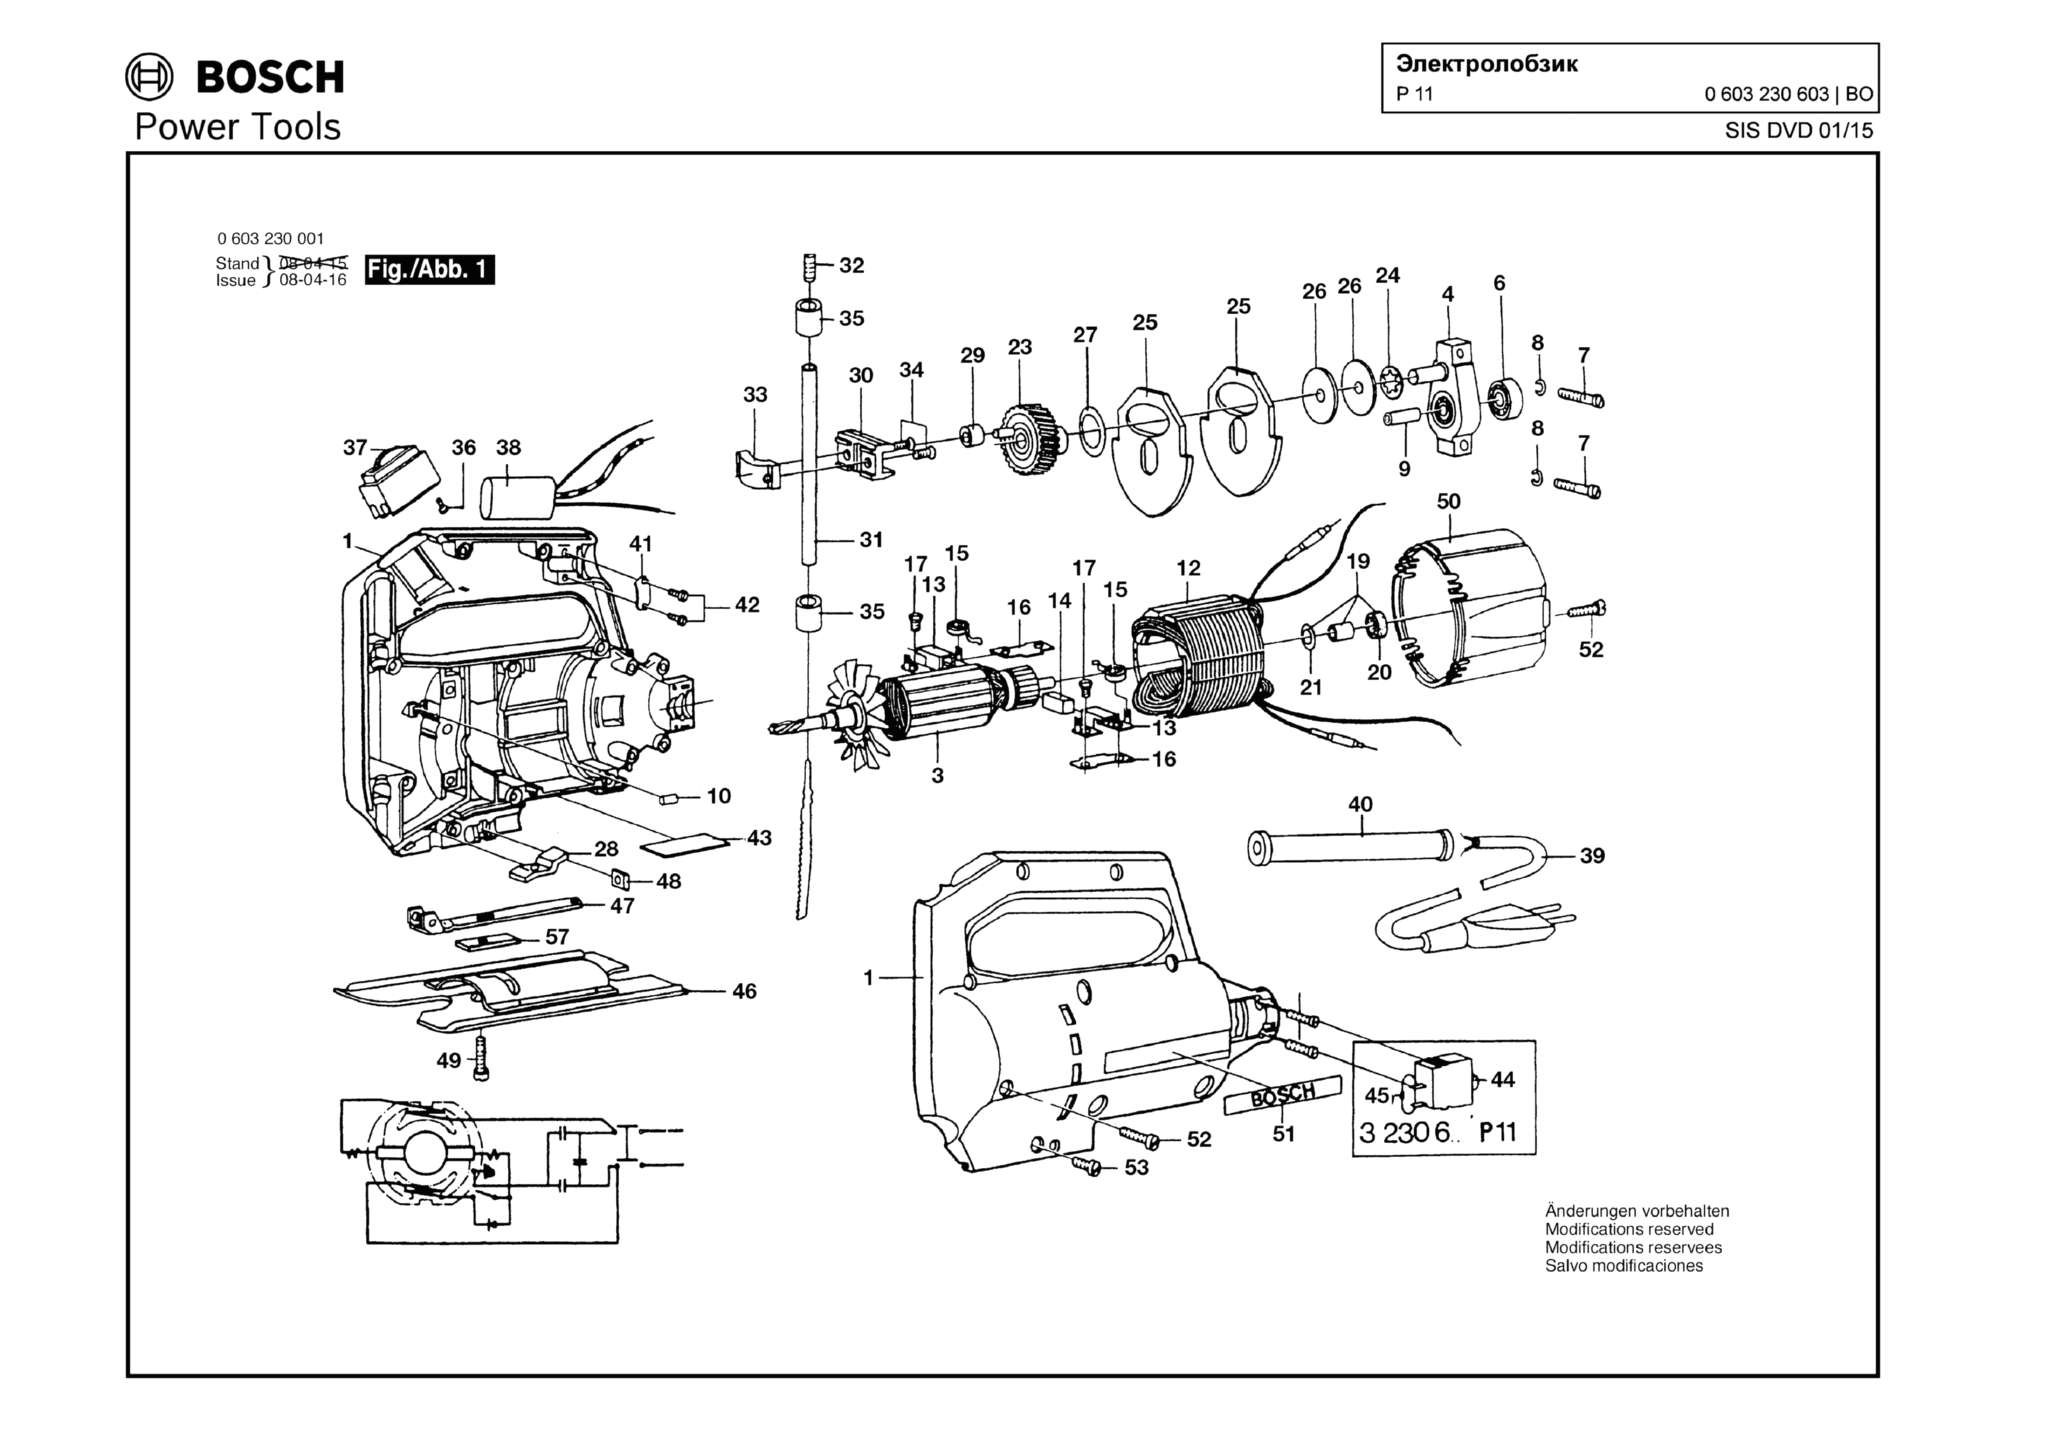 Запчасти, схема и деталировка Bosch P 11 (ТИП 0603230603)